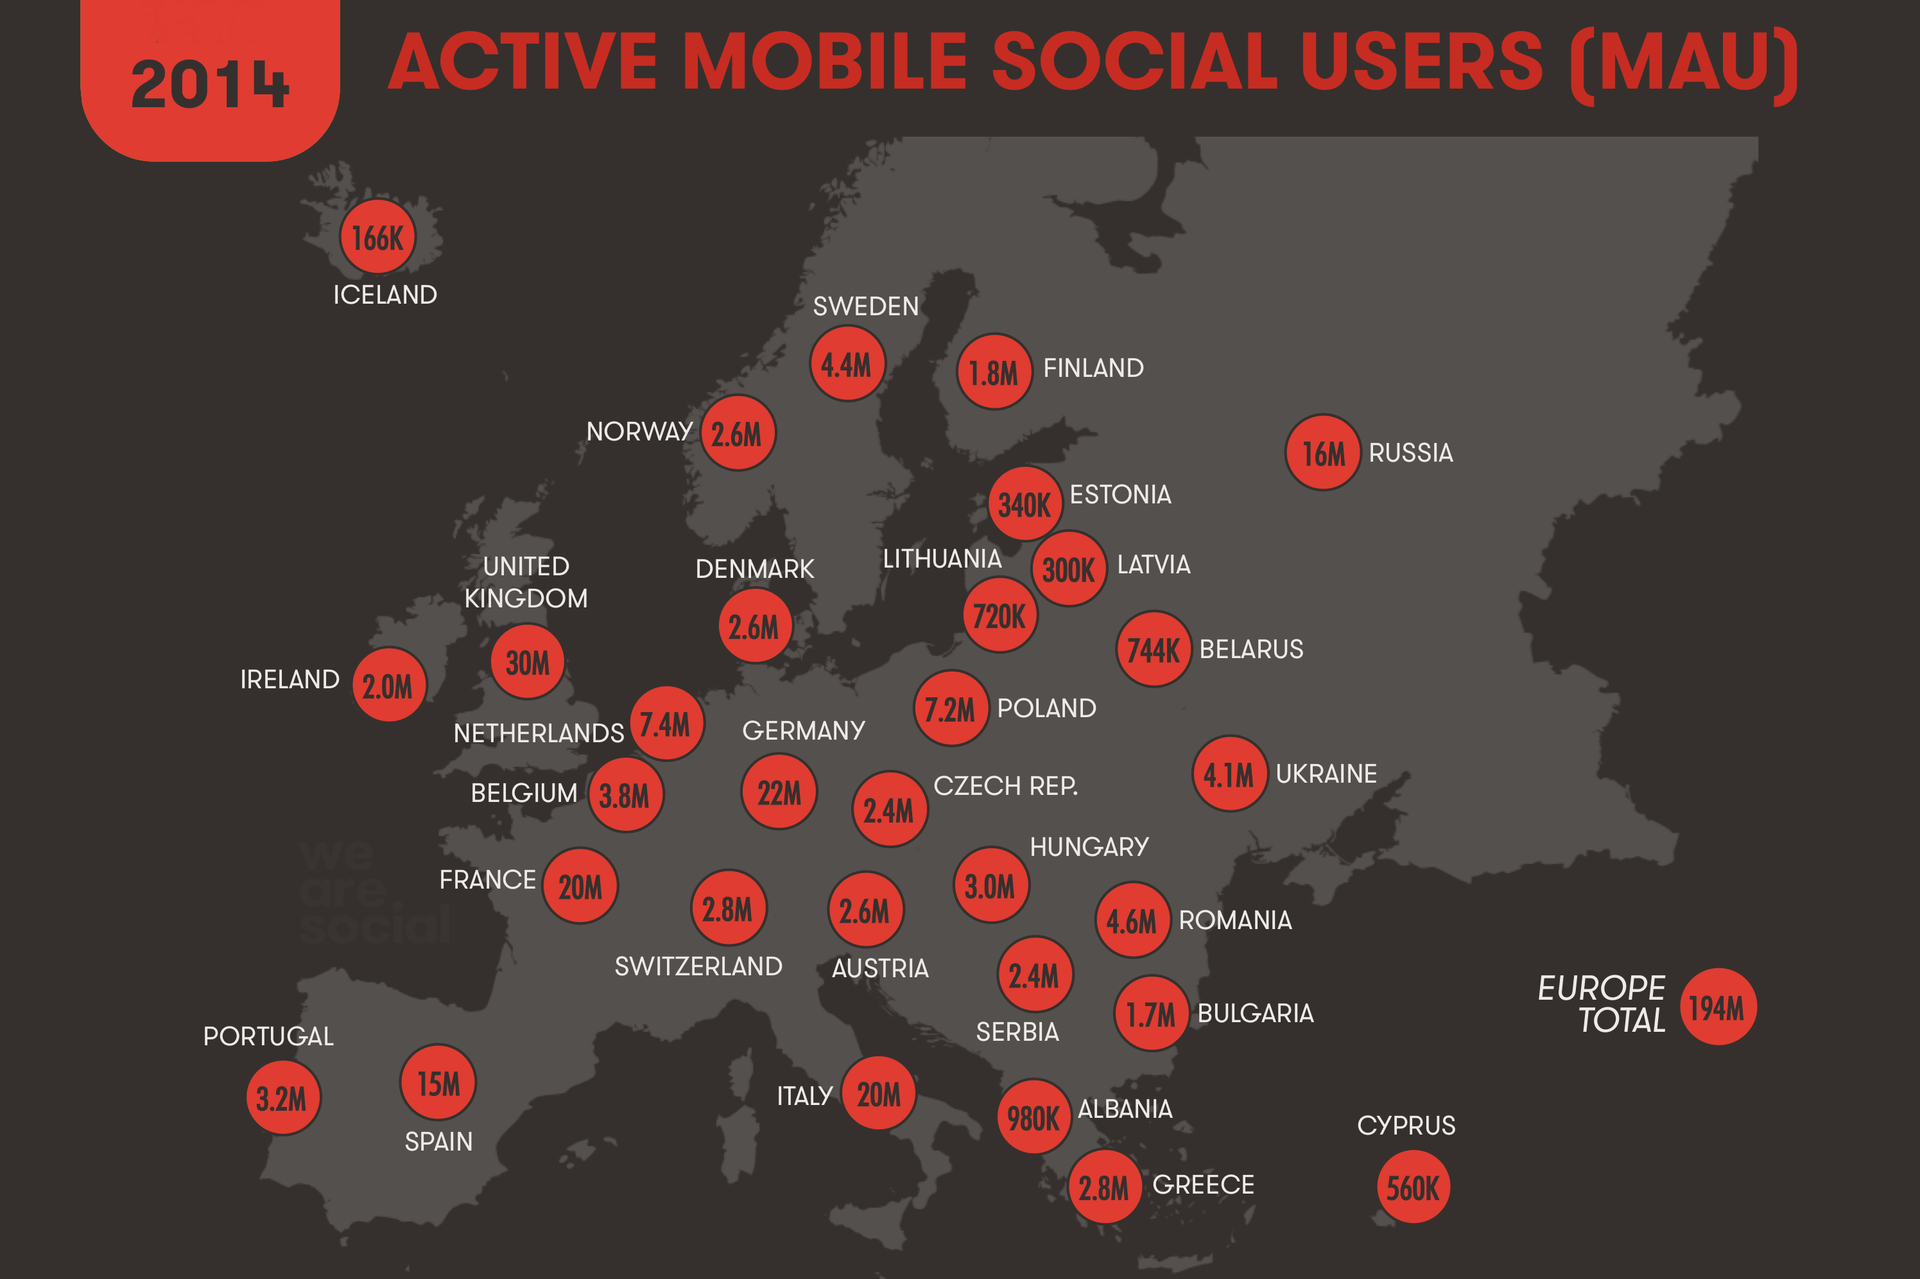 Отчет о интернет предпочтениях жителей Европы в 2014 году от Global Web Index 